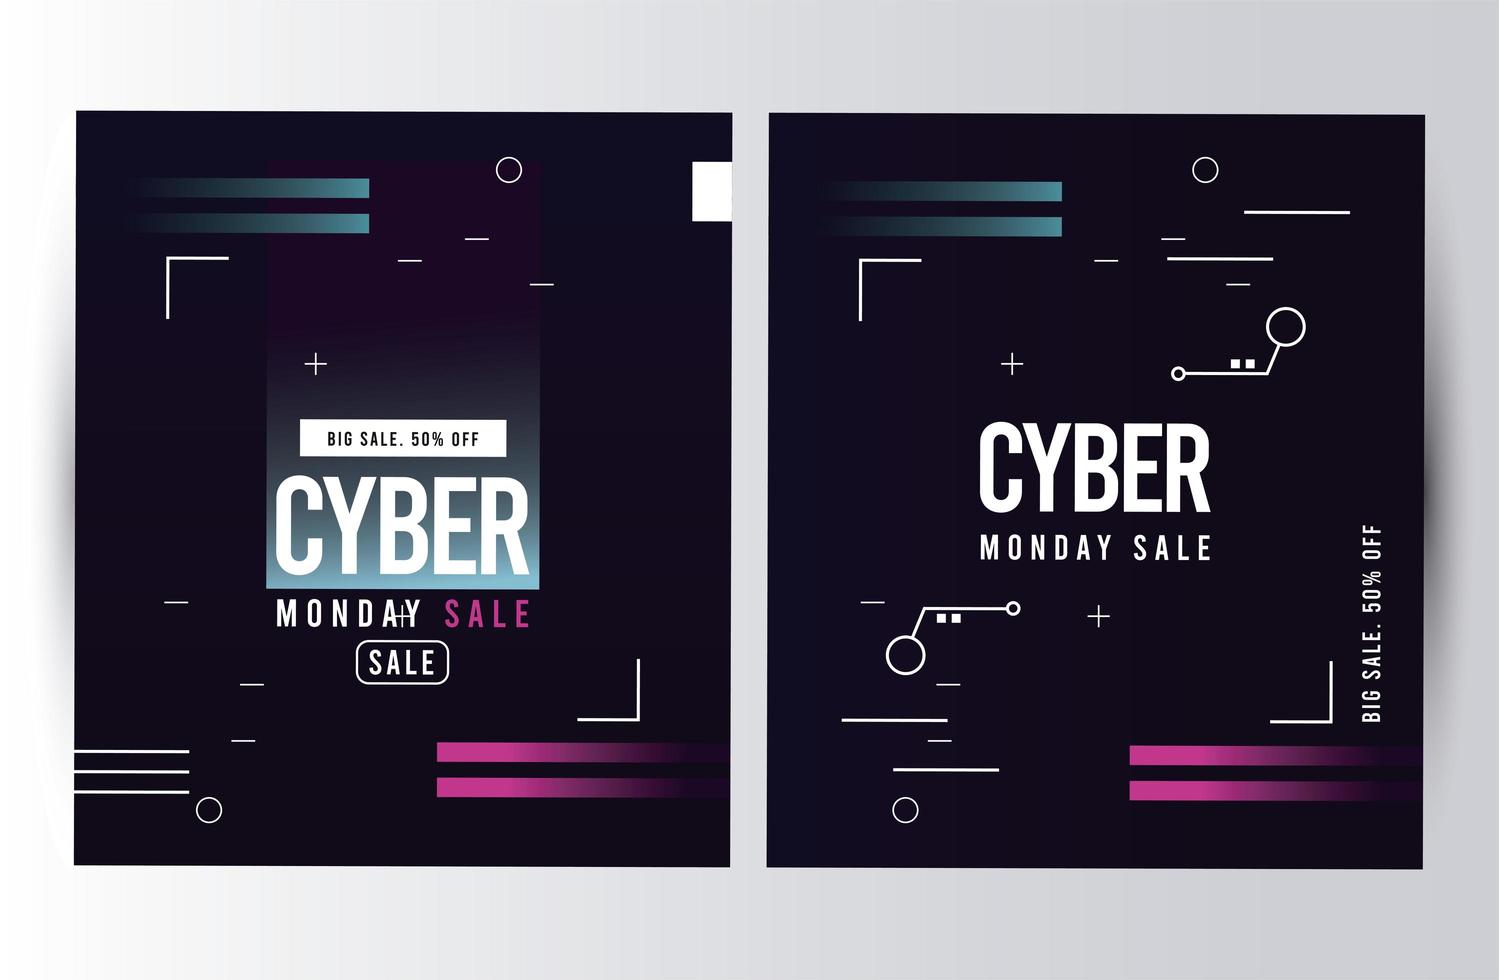 cyber måndag försäljning affischer med rosa och blå linjer vektor